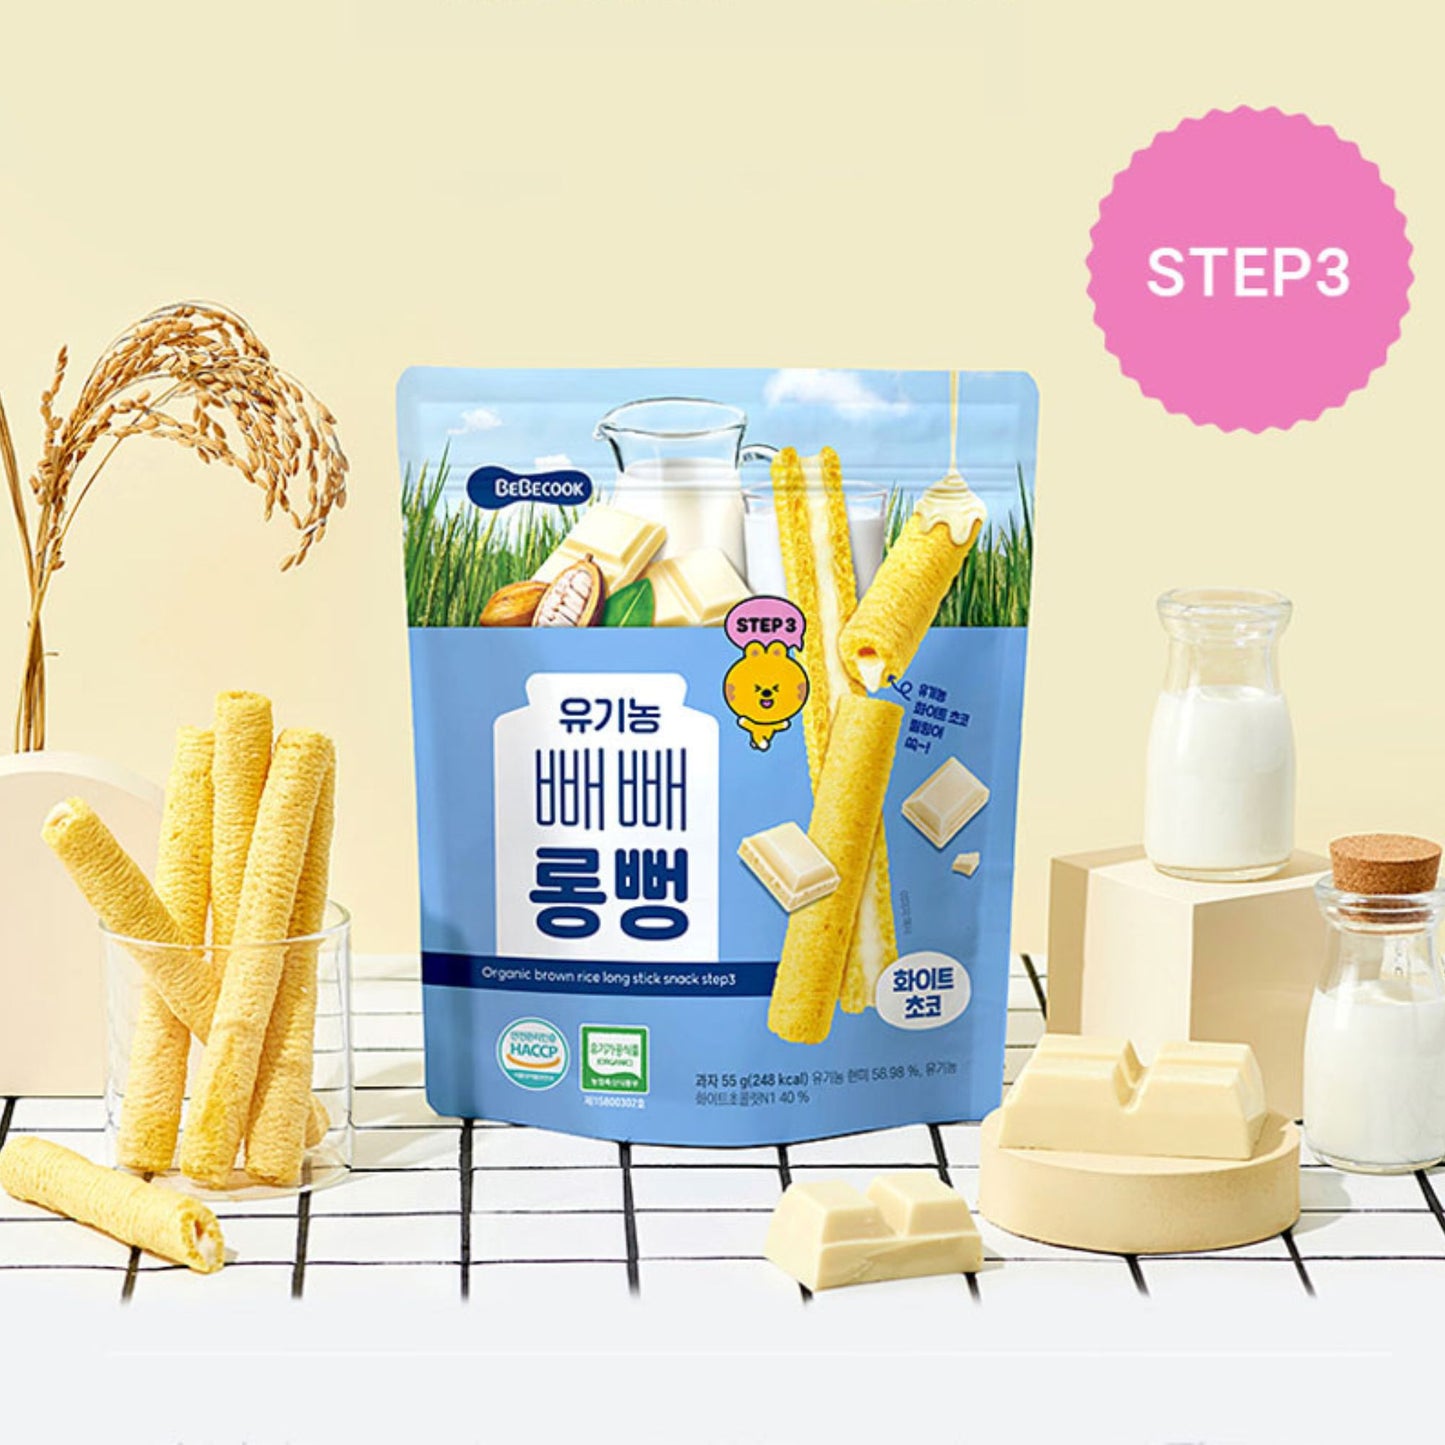 BeBecook - Junior's Organic Jumbo Brown Rice Sticks (White Choco) 55g